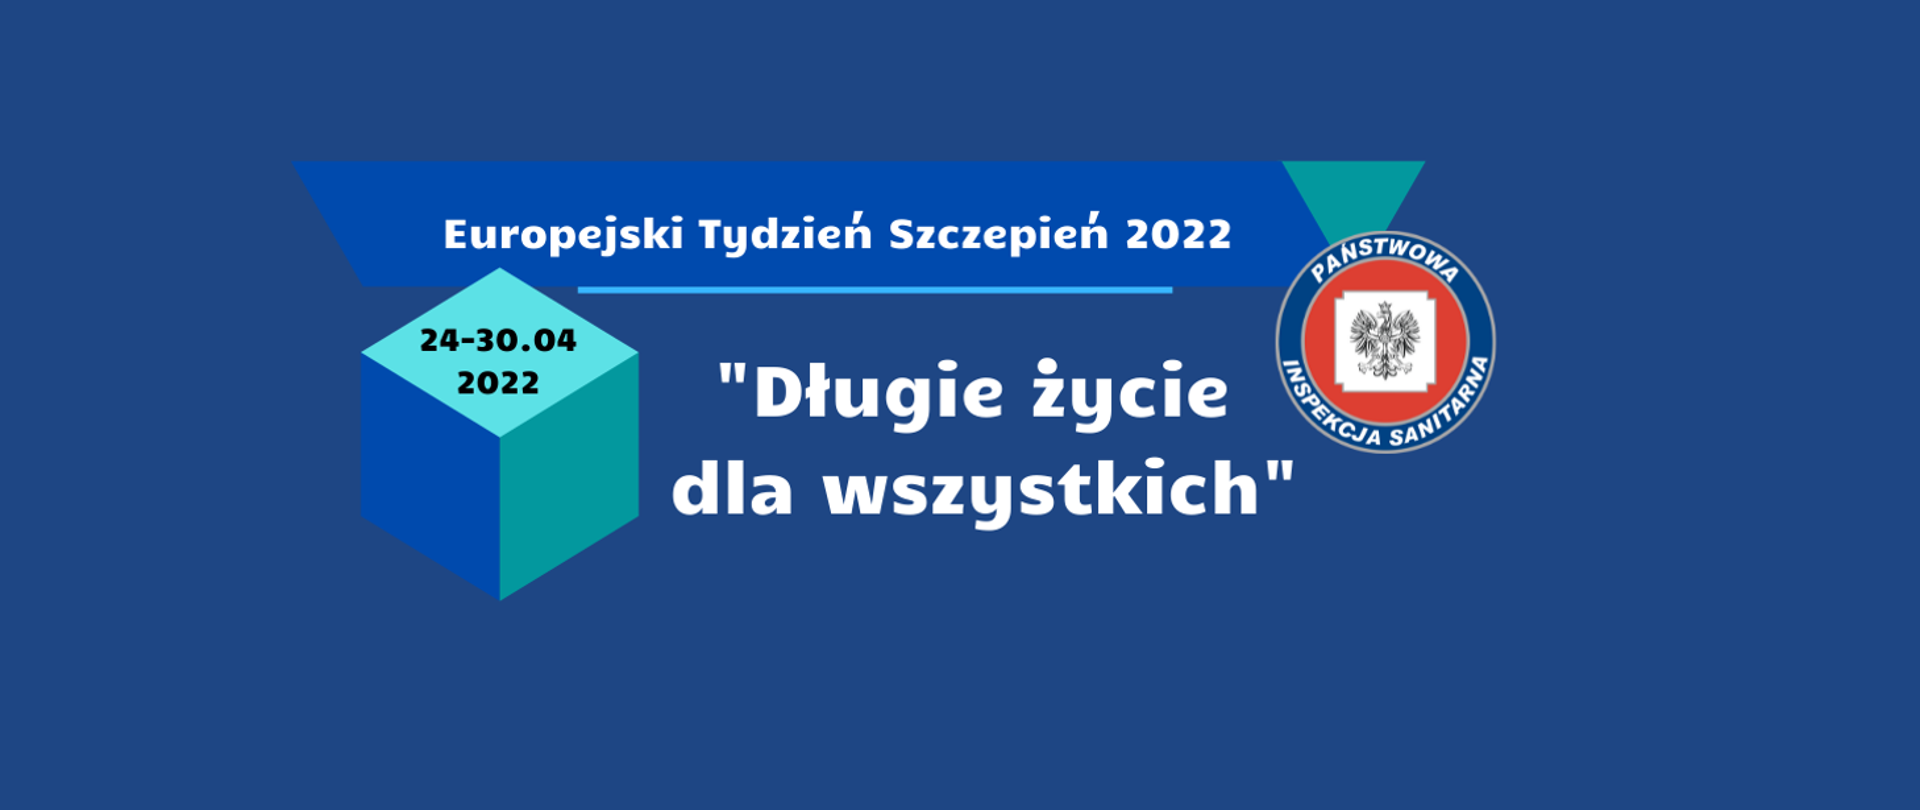 Na niebieskim tle - biały napis: Europejski Tydzień Szczepień 2022 "Długie życie dla wszystkich" 24-30.04.2022, po prawej stronie logo Państwowej Inspekcji Sanitarnej.